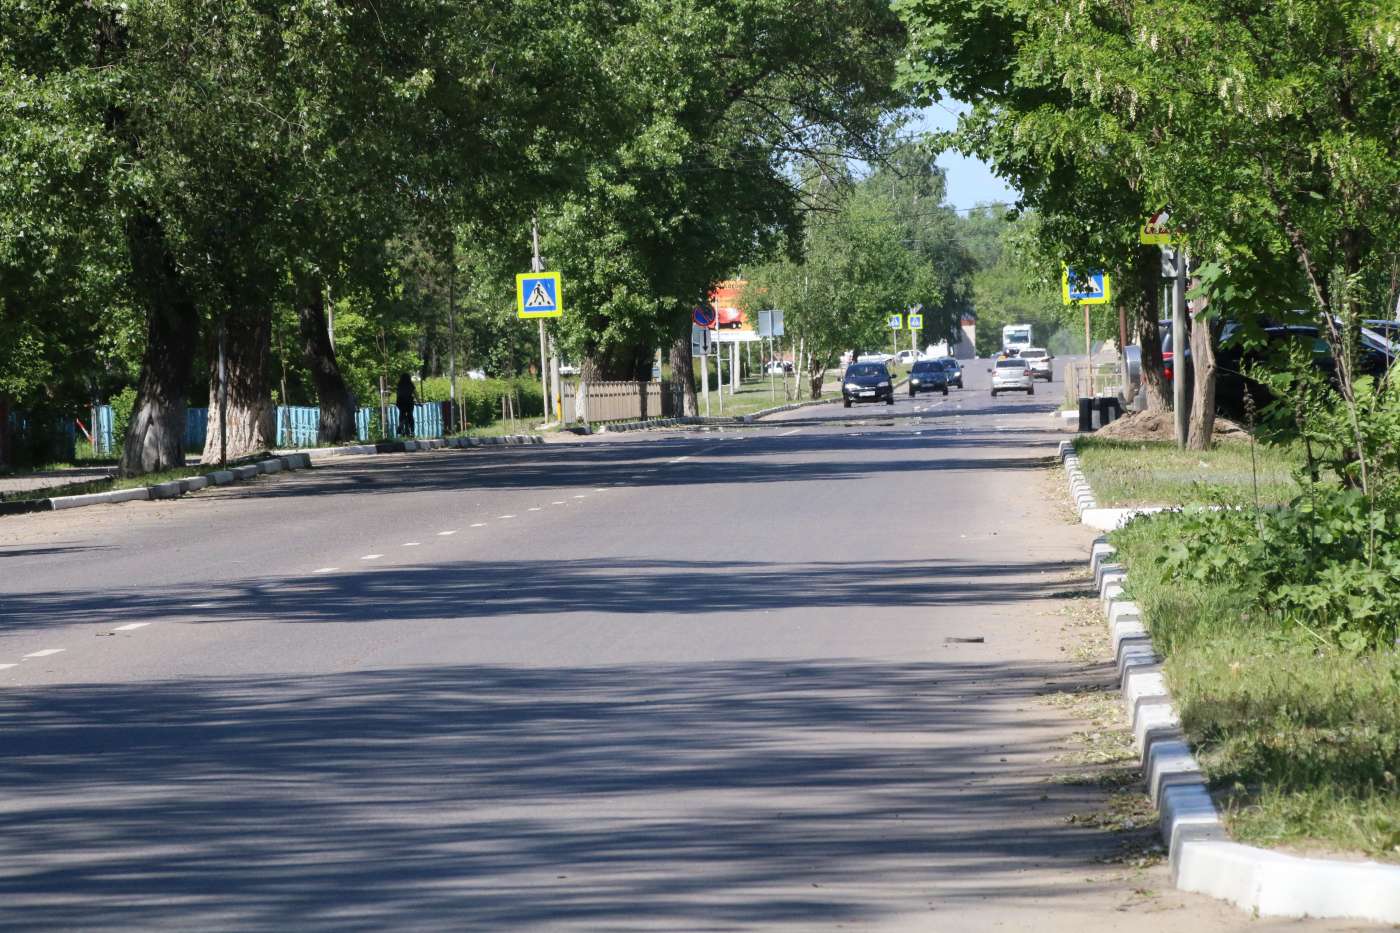 Руководитель области Максим Егоров раскритиковал состояние дорожной разметки в Котовске